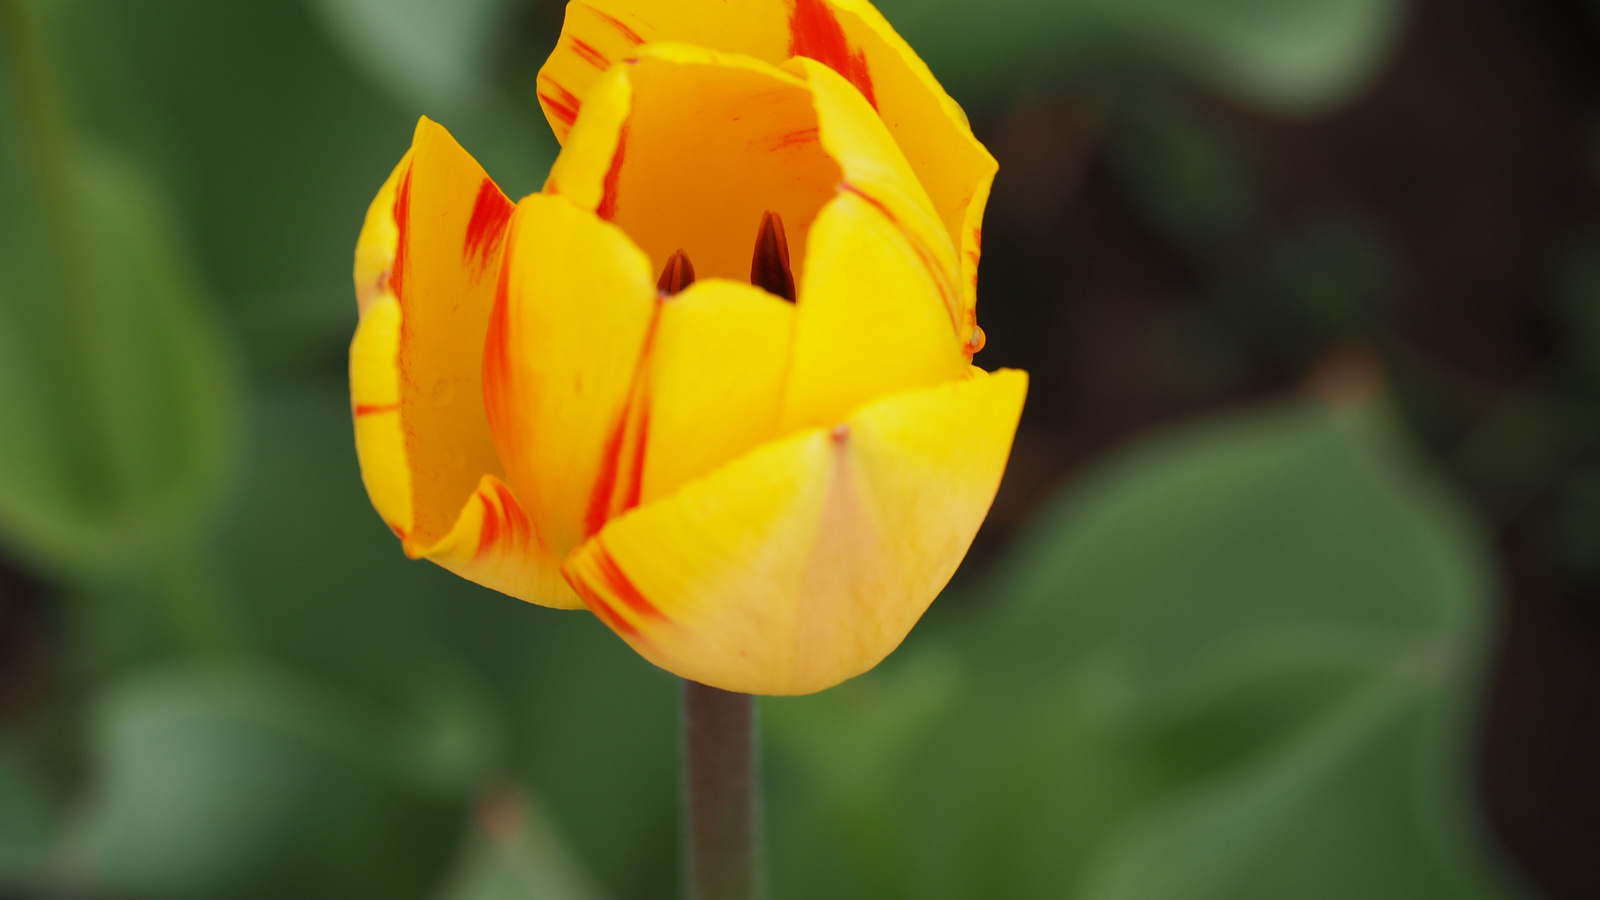 A pilisborosjenői tulipános kert, Olympic flame, SzG3